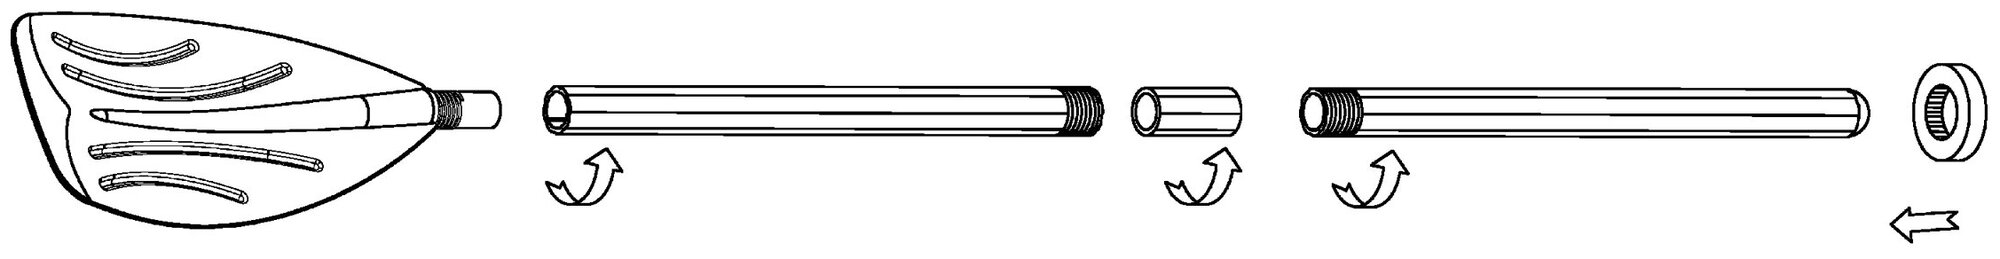 Весла пластиковые Intex 59623 FRENCH OARS, со стопорными кольцами (длина 122 см)